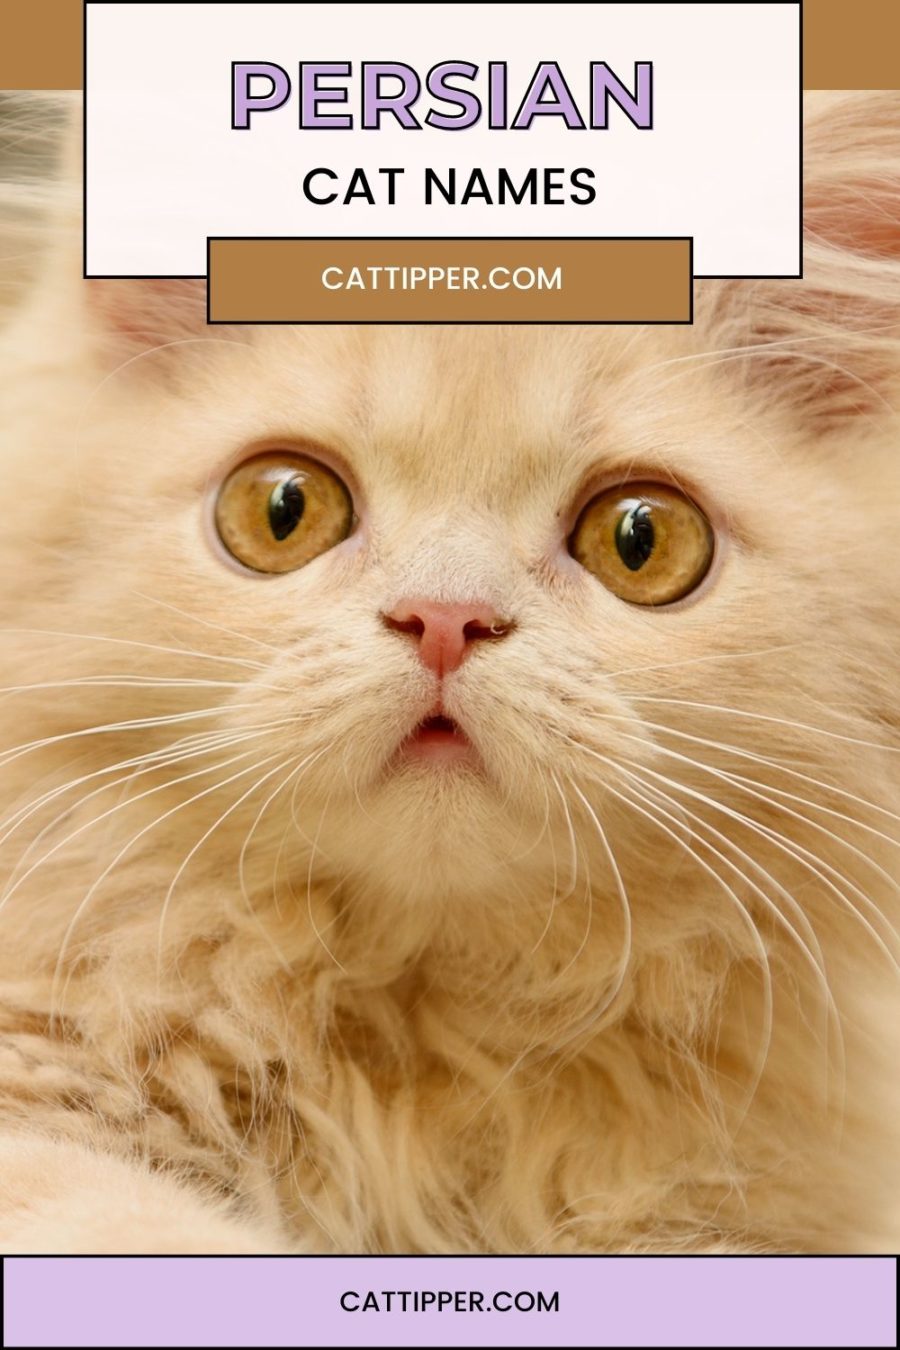 Persian cat names - image of ginger colored Persian kitten